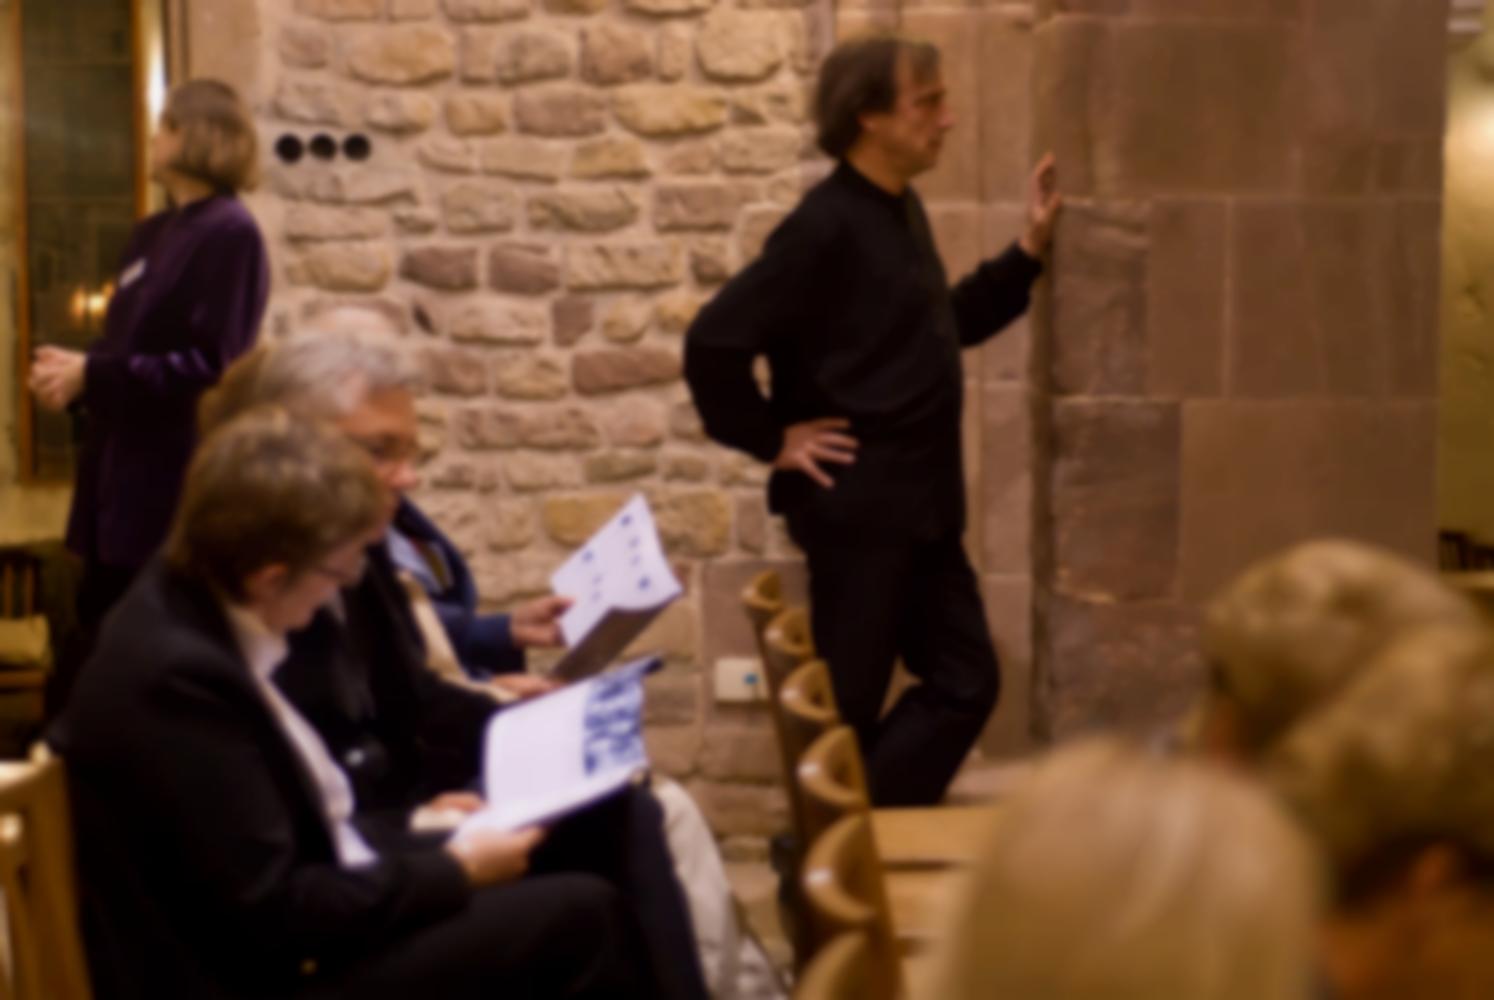 Appuyé à un pilier de l'église, le chef d'orchestre semble se concentrer, l'administratrice de l'orchestre jette un œil dans la sacristie, les premiers spectateurs lisent leurs programmes. Echternach, Luxembourg, octobre 2009.